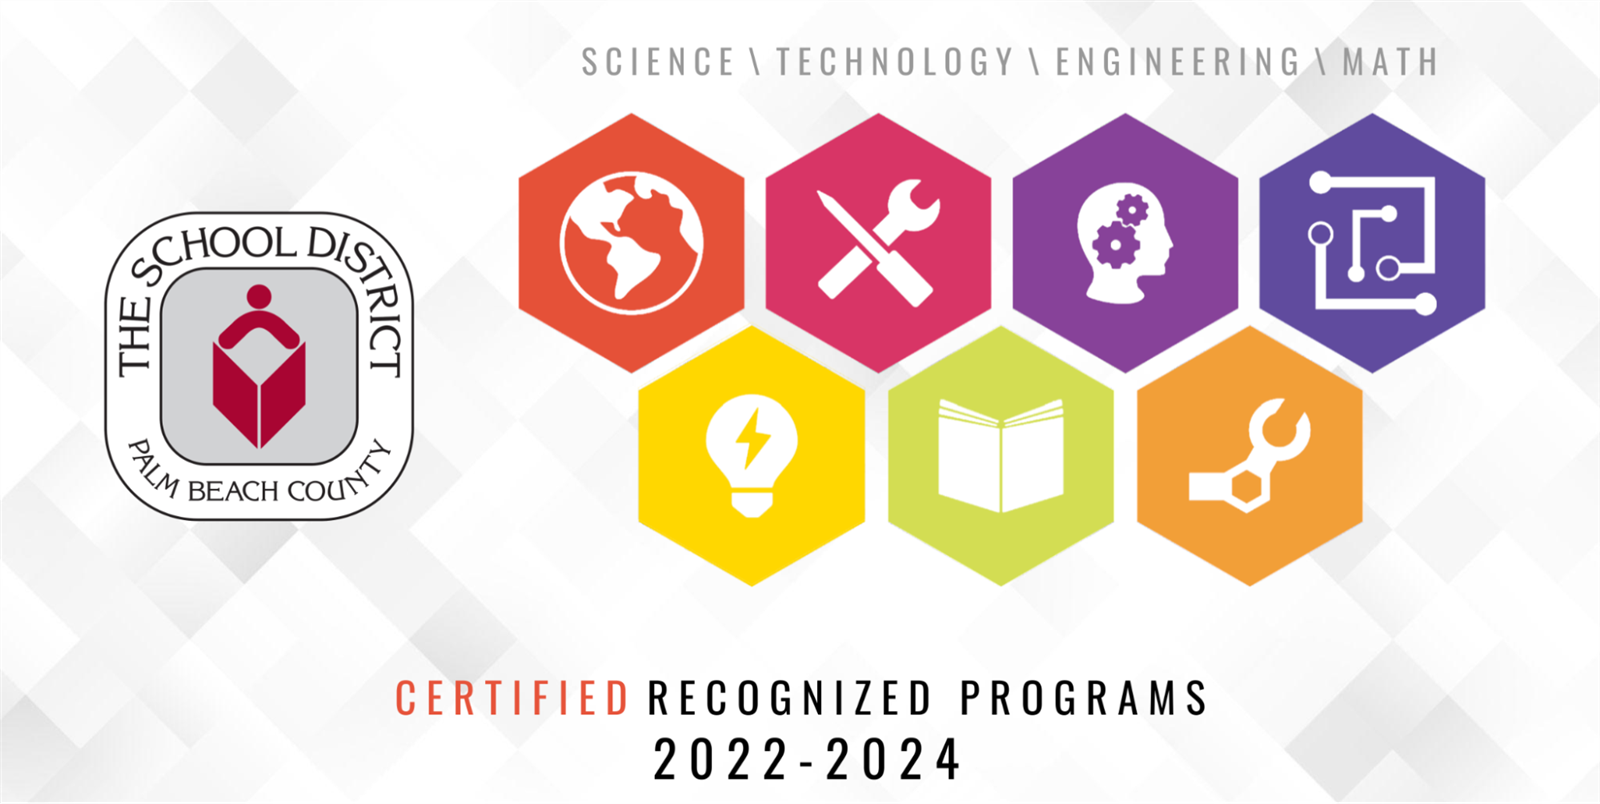 STEM Certified Recognized Programs 2022-2024